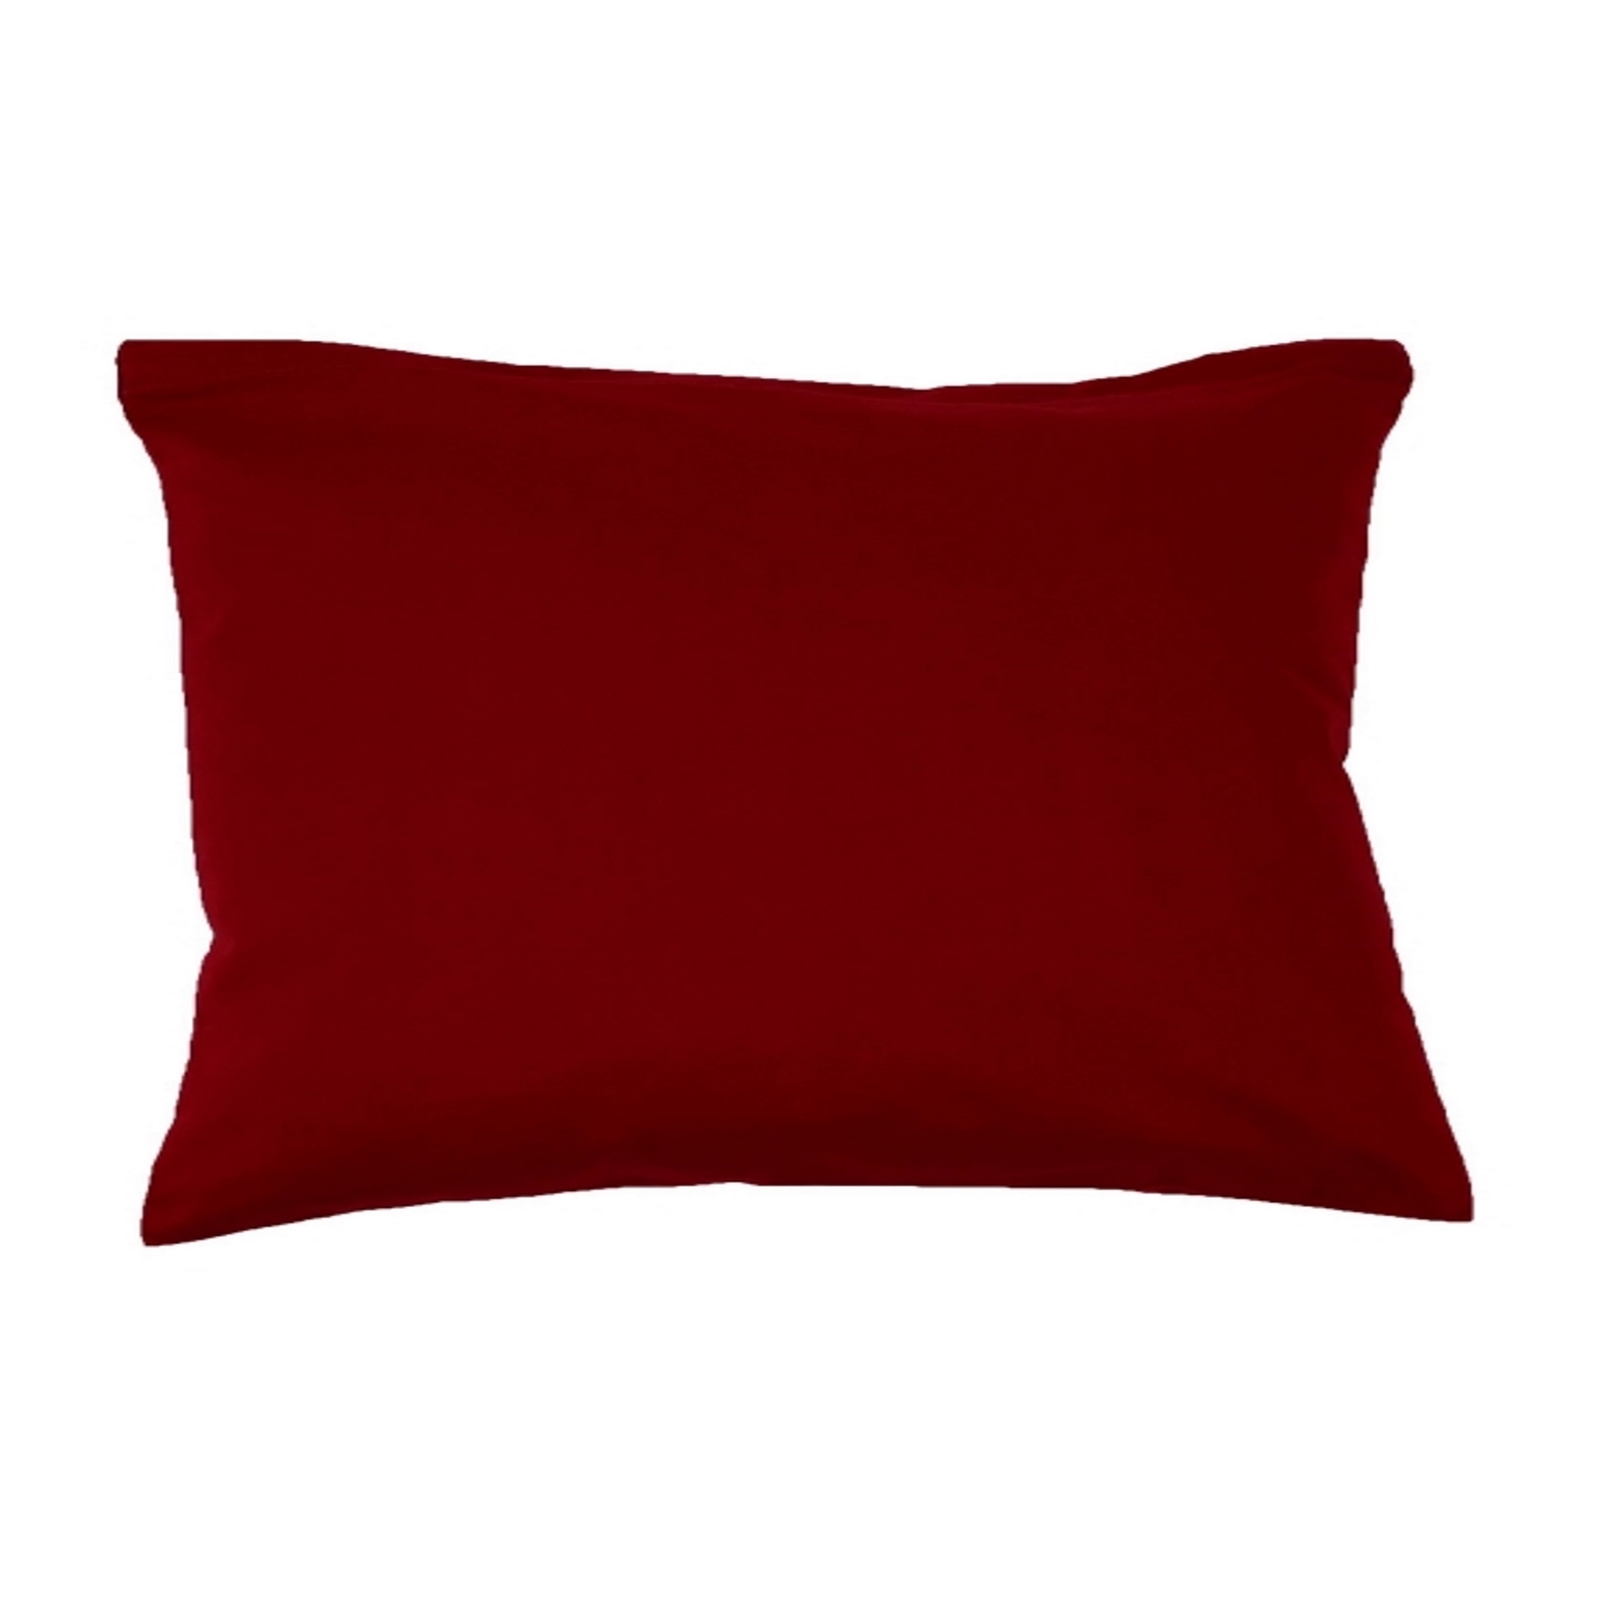 Kissenbezug 35x55 cm Uni Baumwolle Linon-Bordeaux Rot